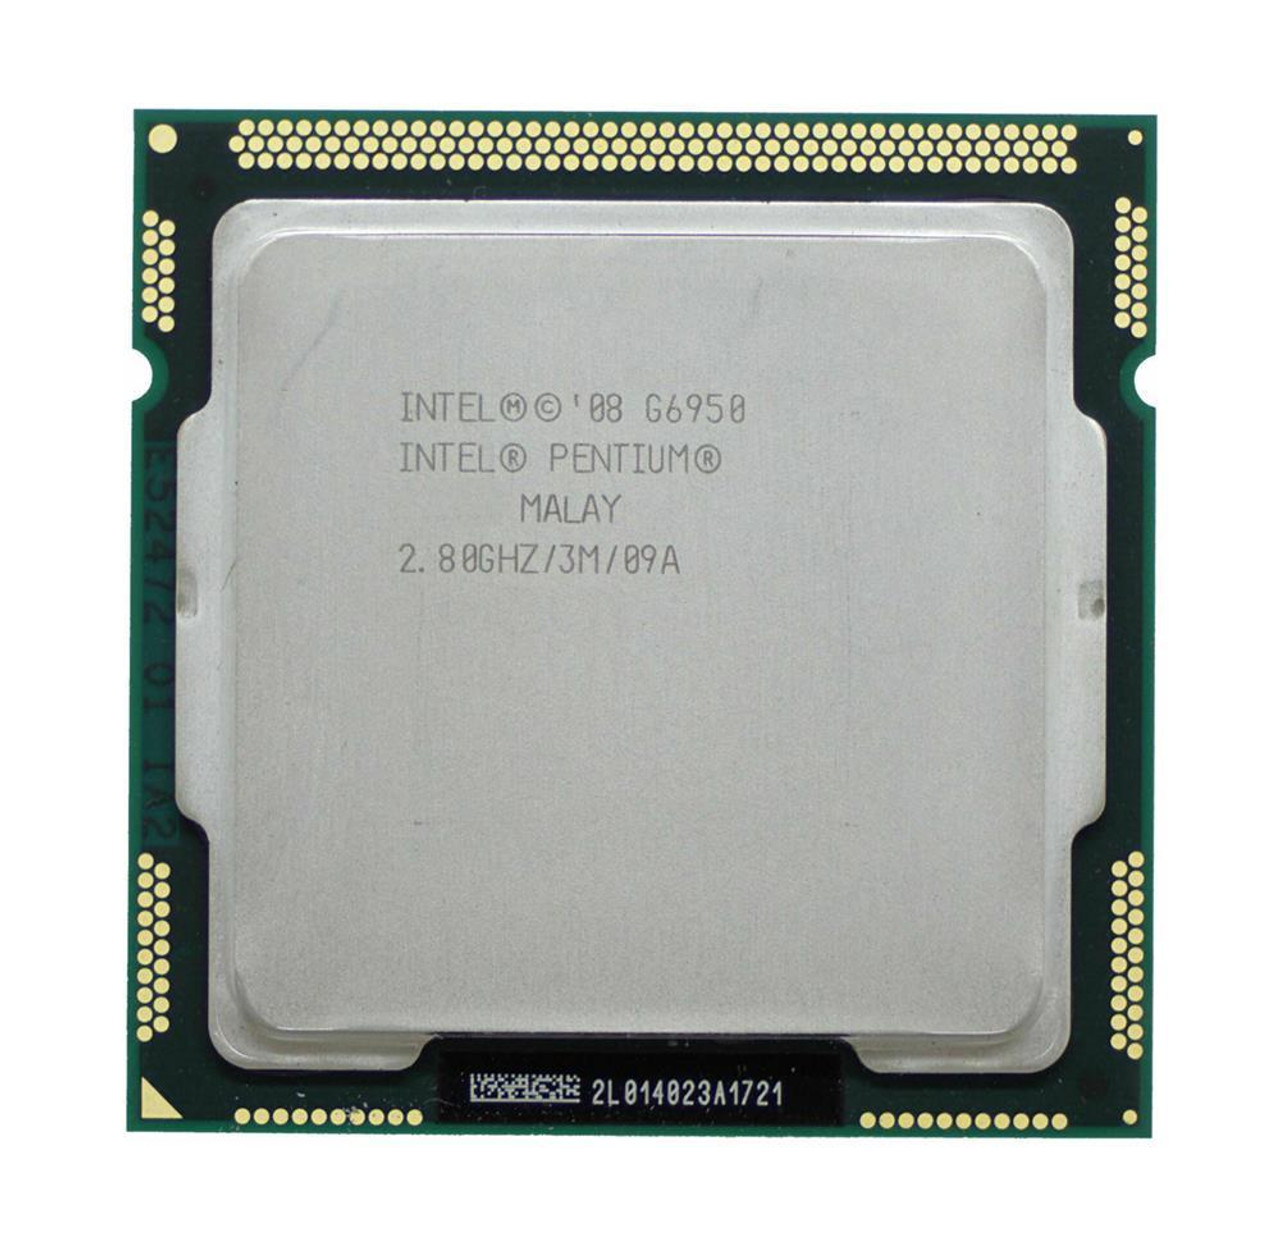 Dell 2.80GHz 2.50GT/s DMI 3MB L3 Cache Intel Pentium G6950 Dual-Core Processor Upgrade